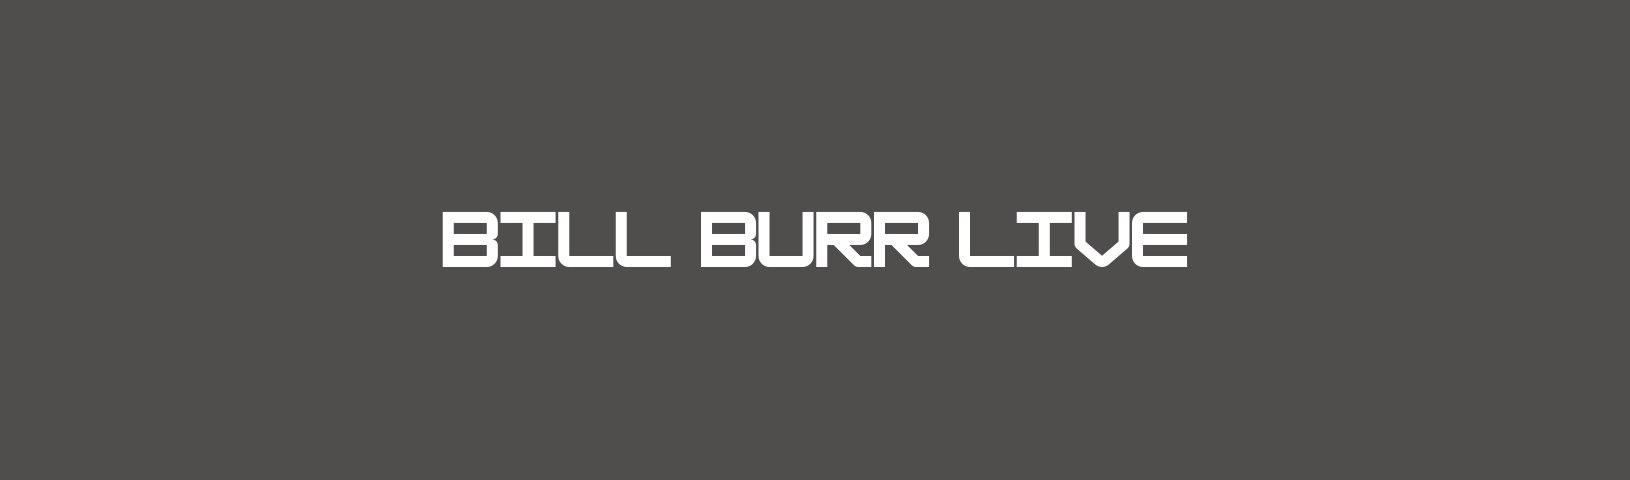 Bill Burr Live Background Image